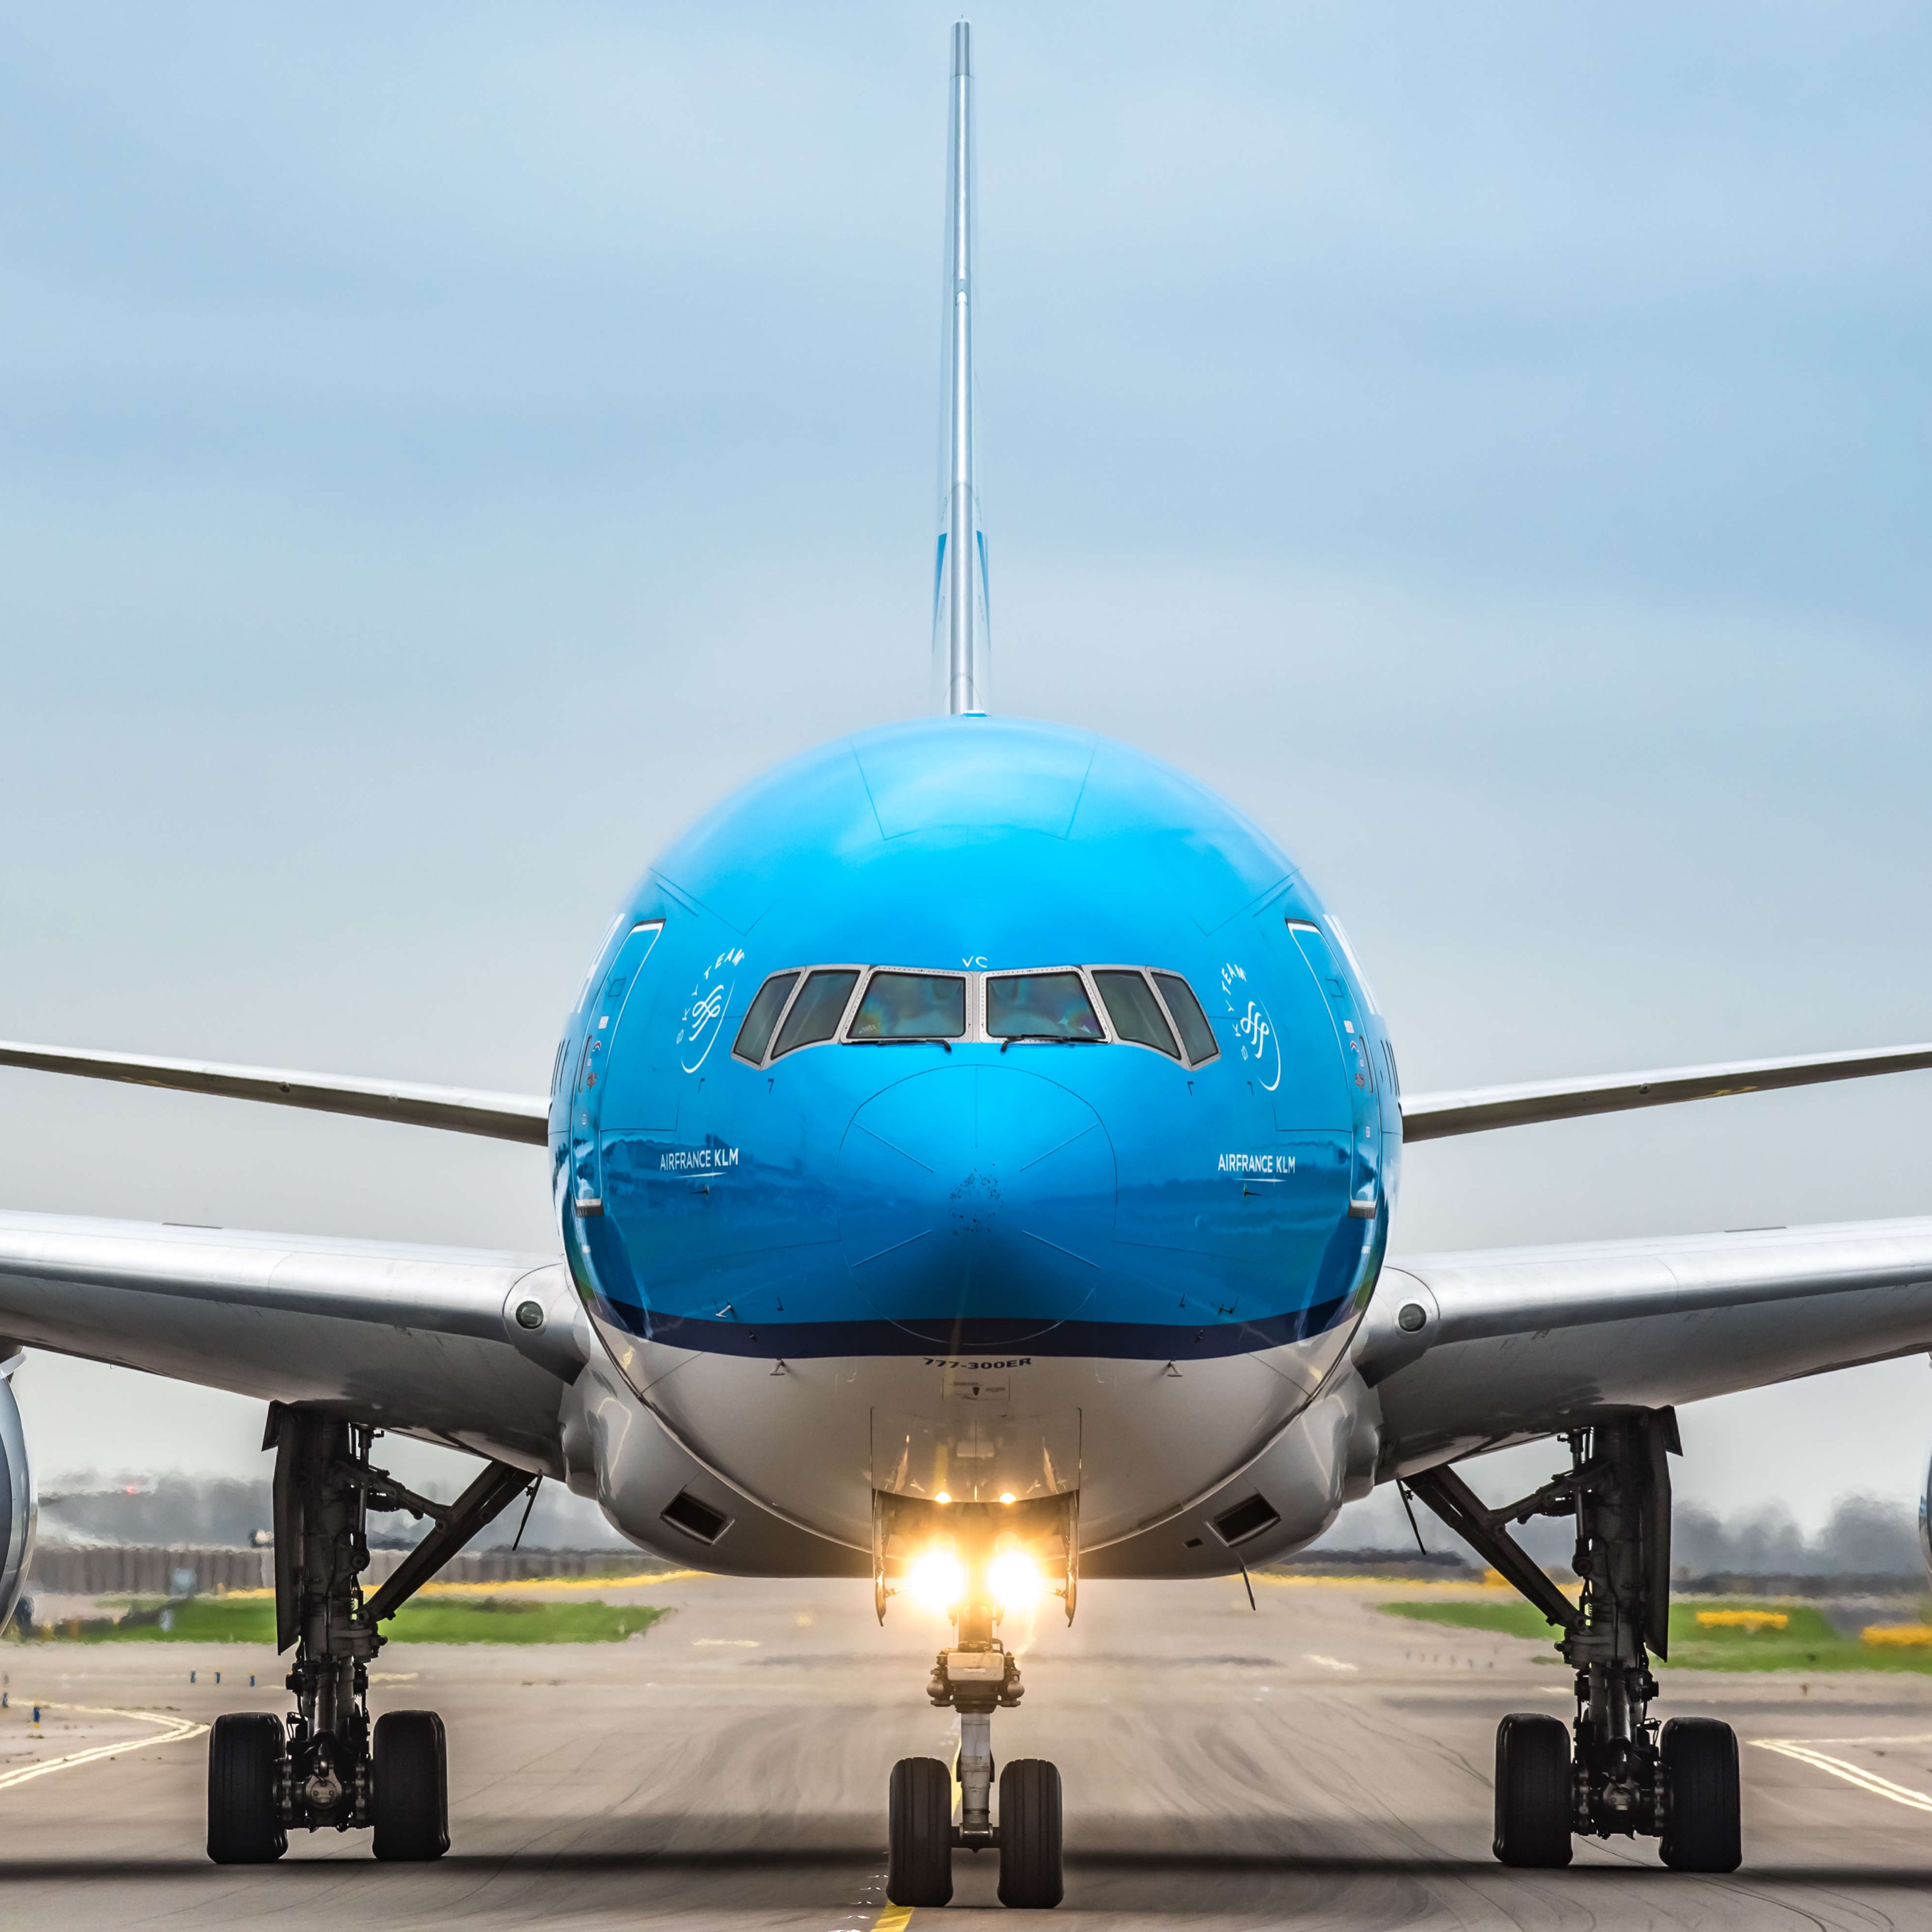 荷兰皇家航空计划自2023年3月26日起增加大中国区航班频次